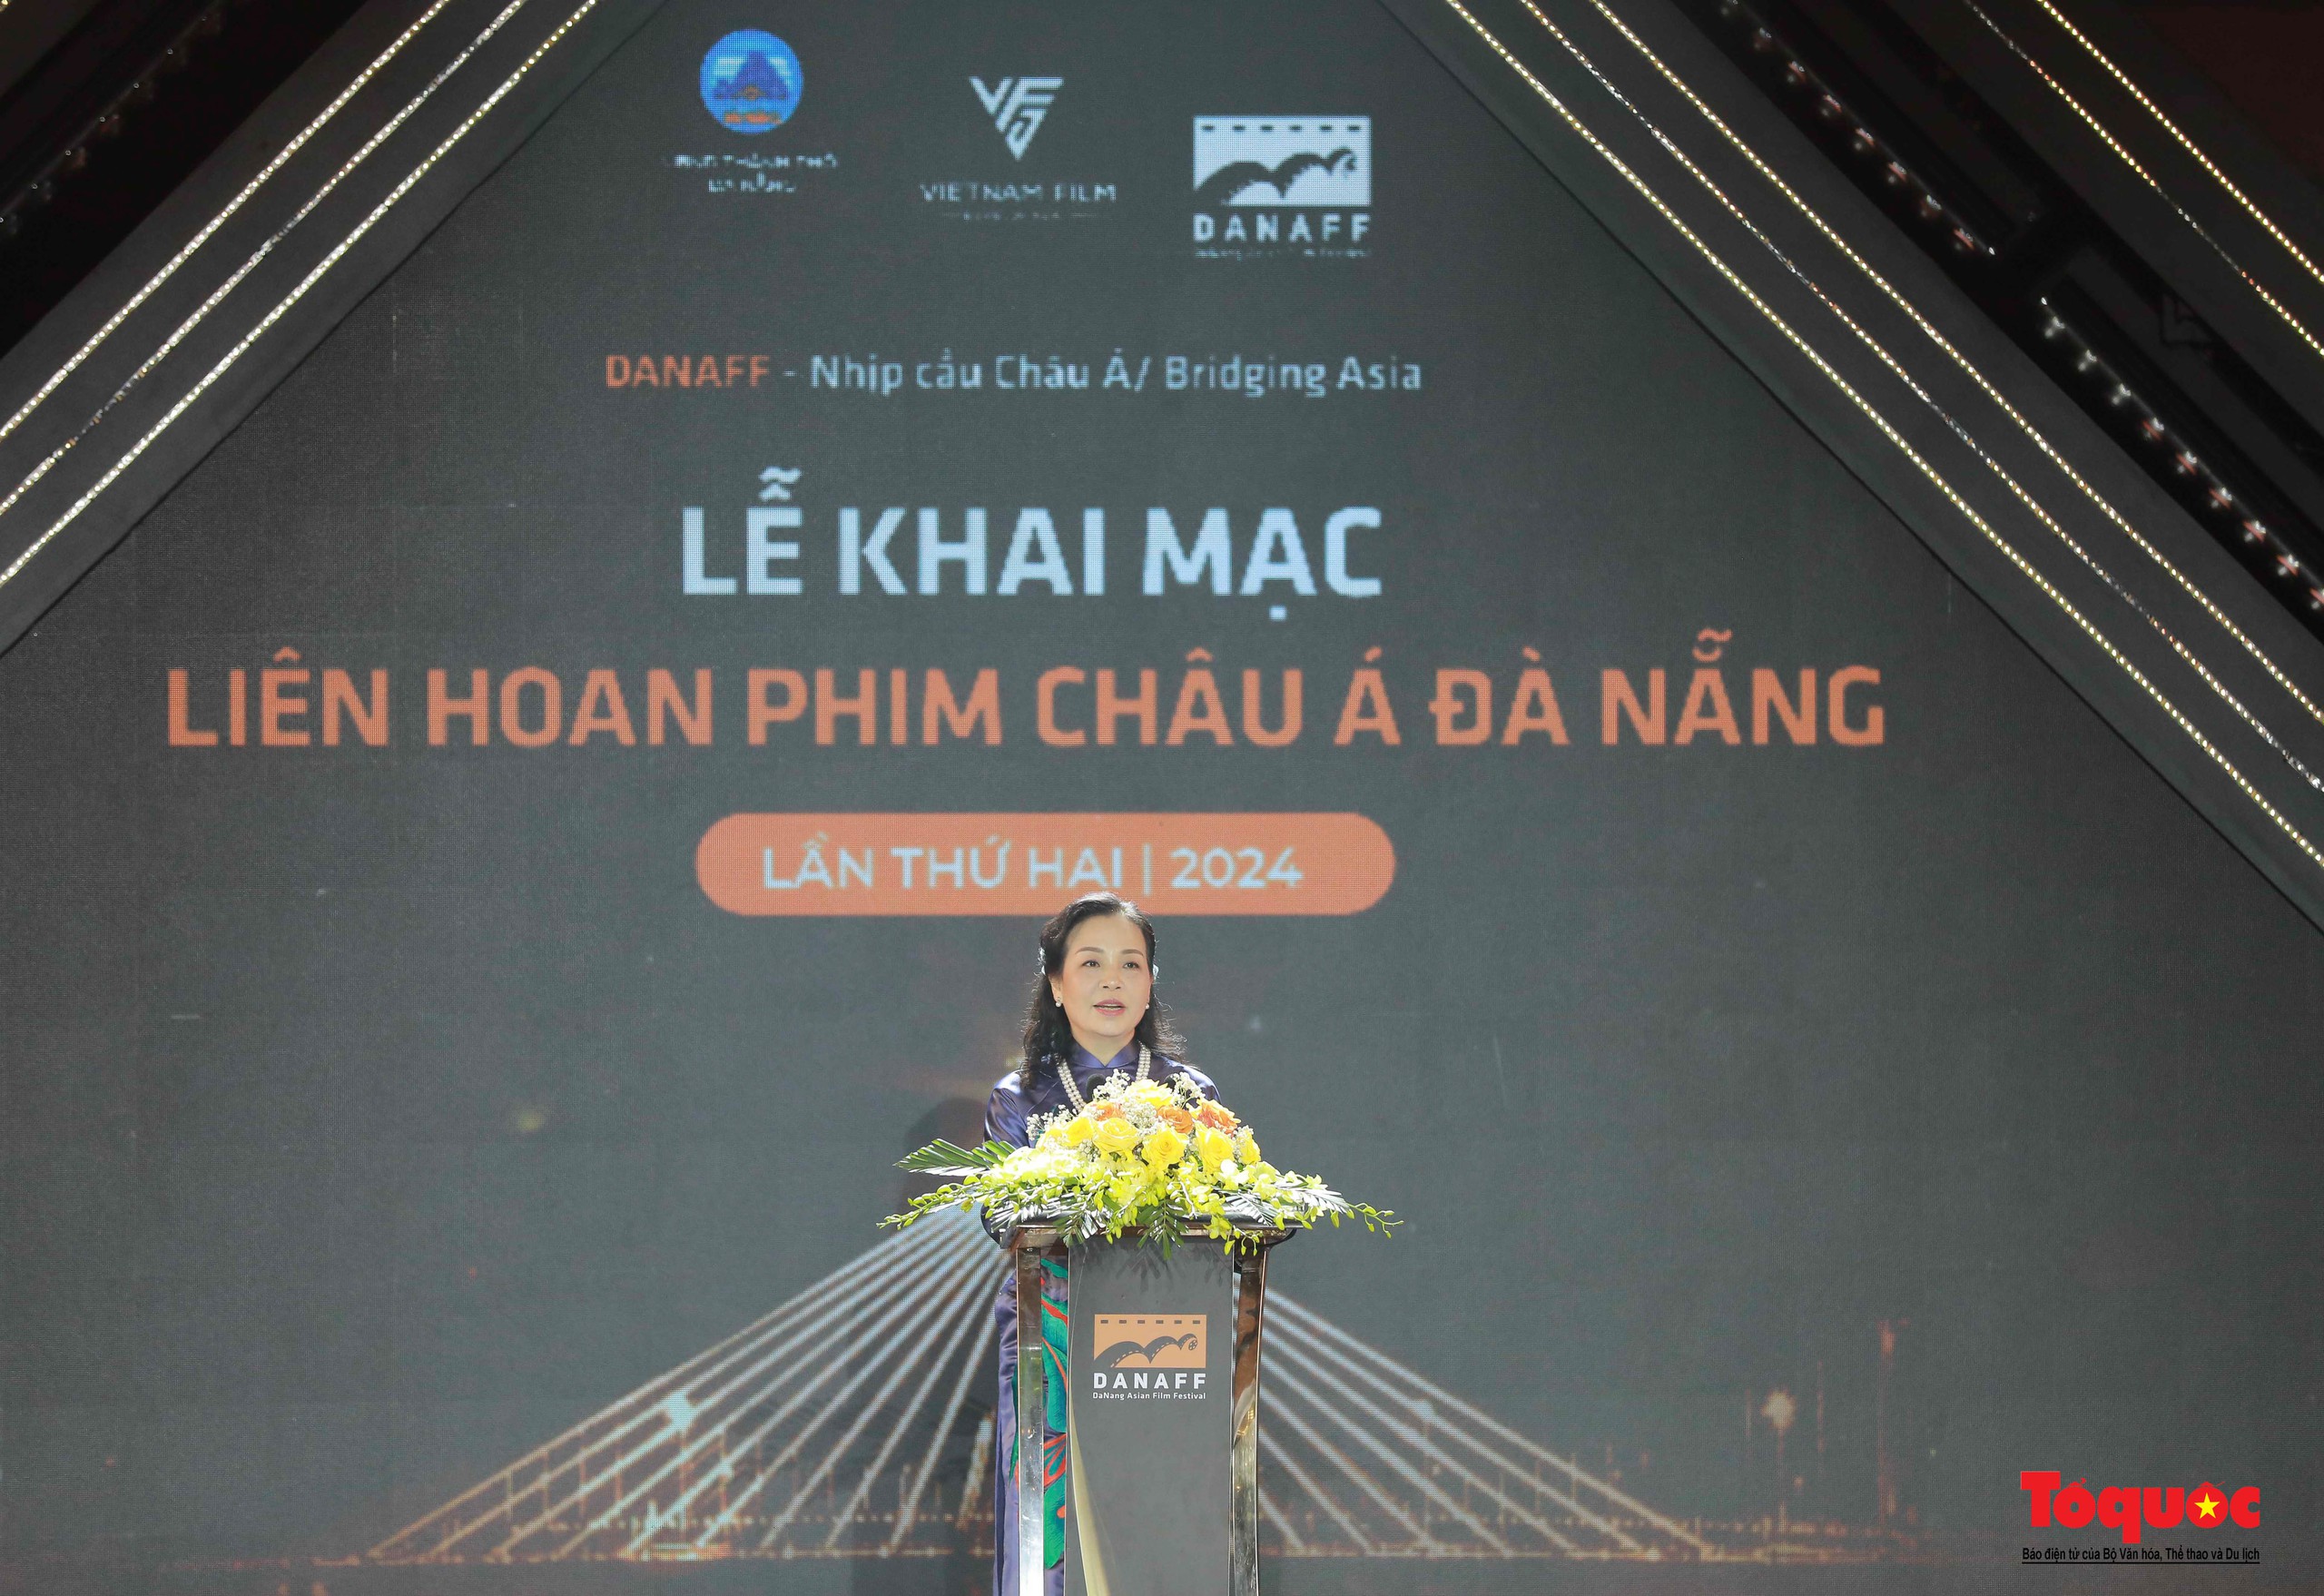 LHP châu Á Đà Nẵng 2024: Lan tỏa những giá trị văn hóa tốt đẹp và tôn vinh điện ảnh Việt - Ảnh 1.